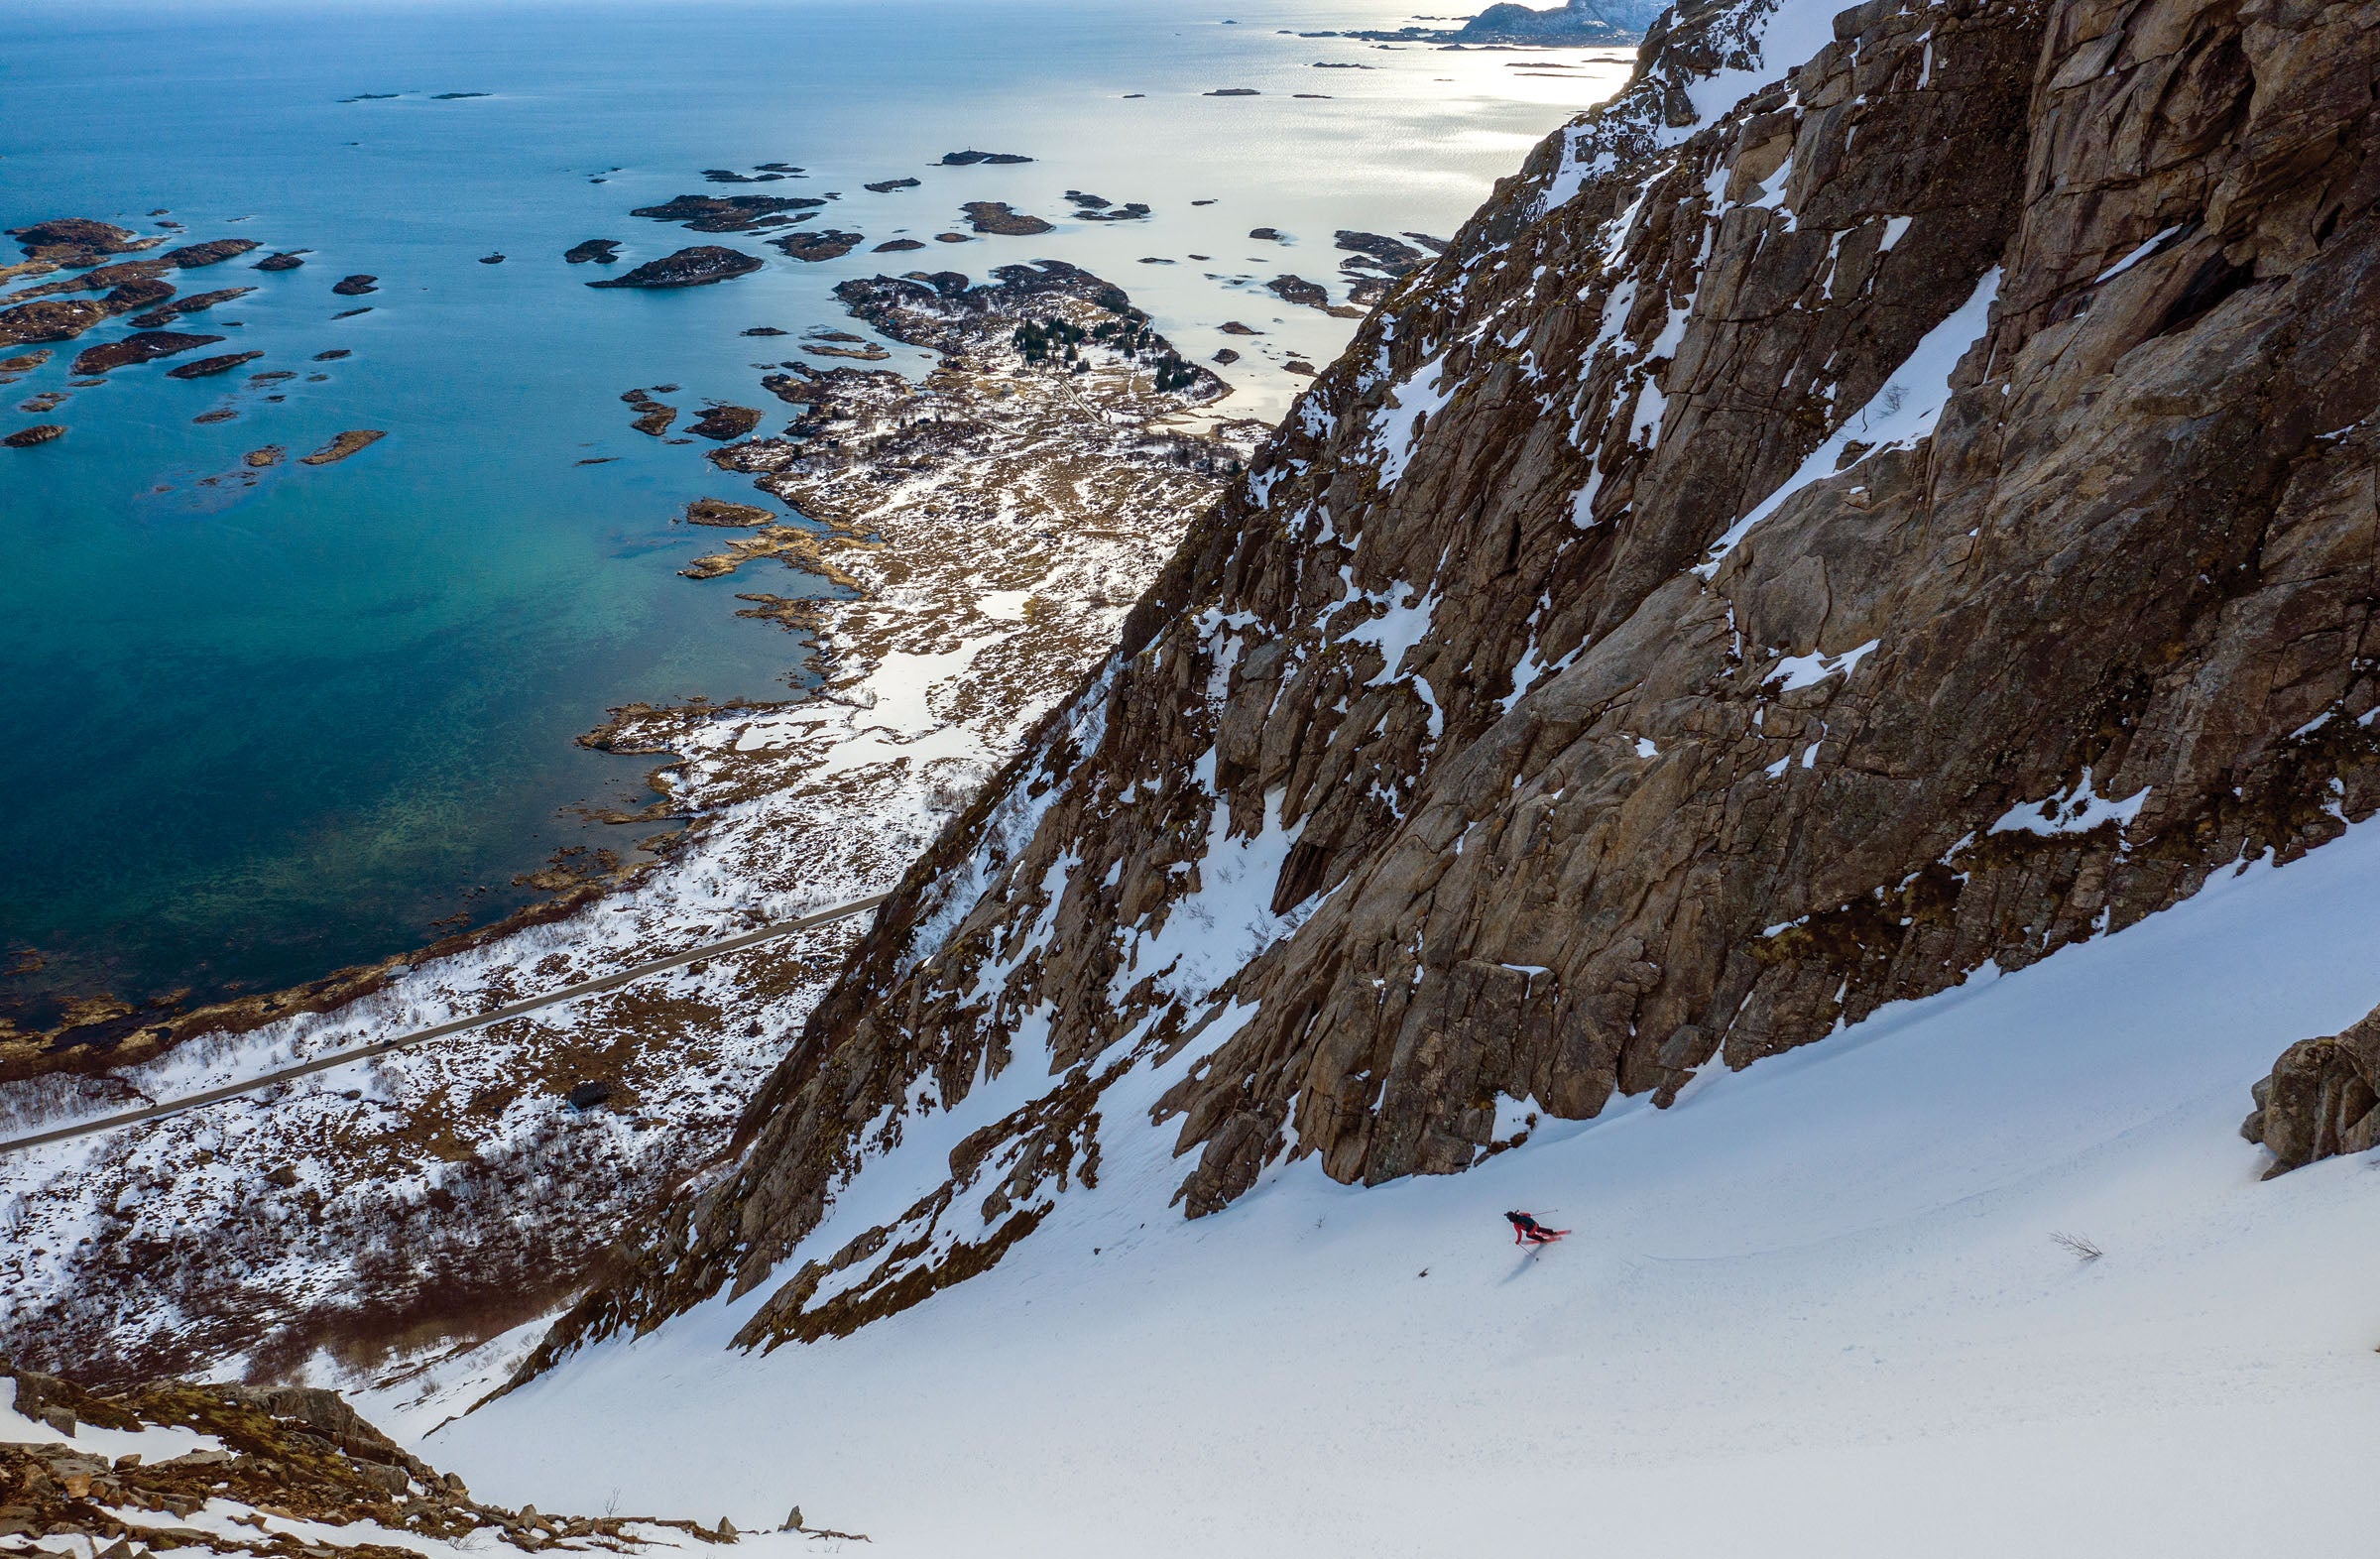 Skiing Norway’s Lofoten Islands